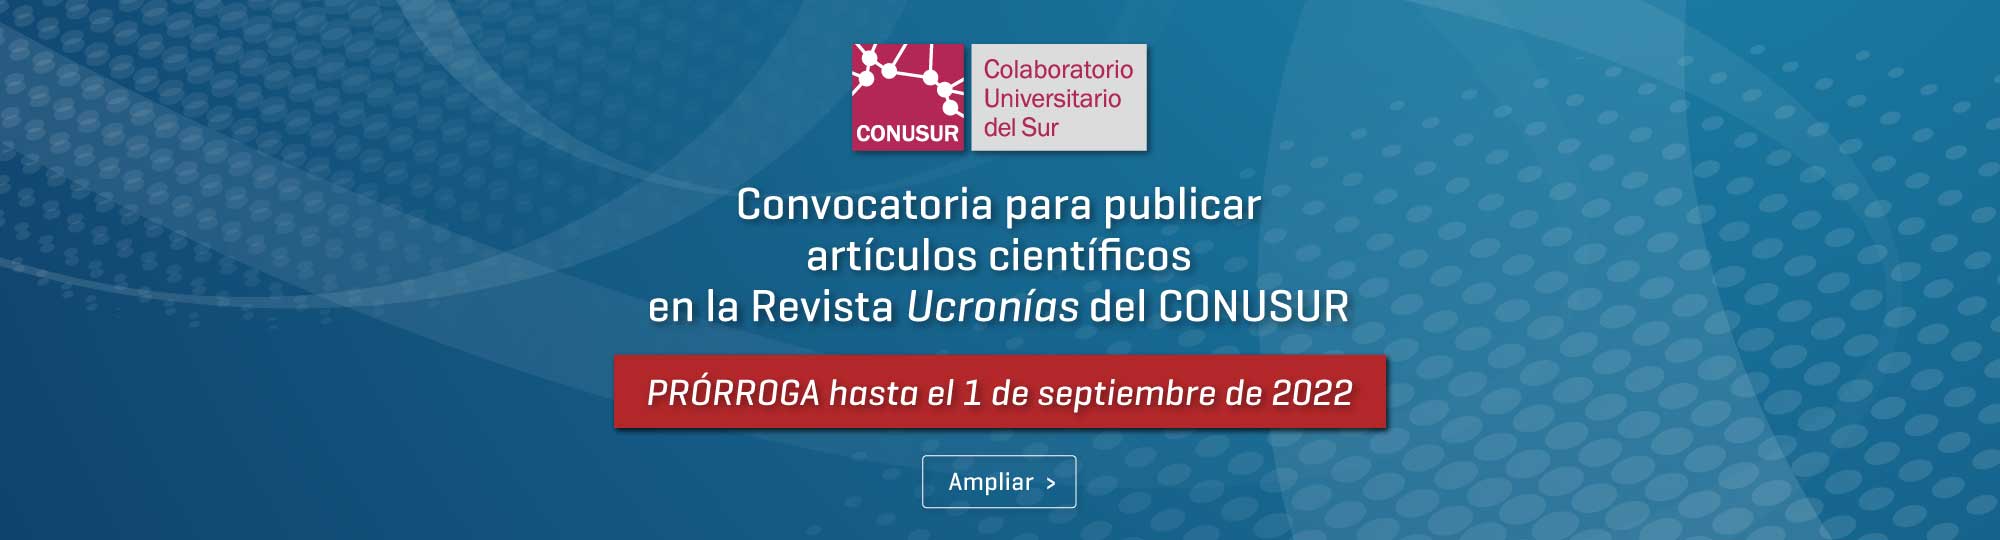 Convocatoria para publicar artículos científicos en la Revista Ucronías del CONUSUR - PRÓRROGA hasta el 1 de septiembre de 2022